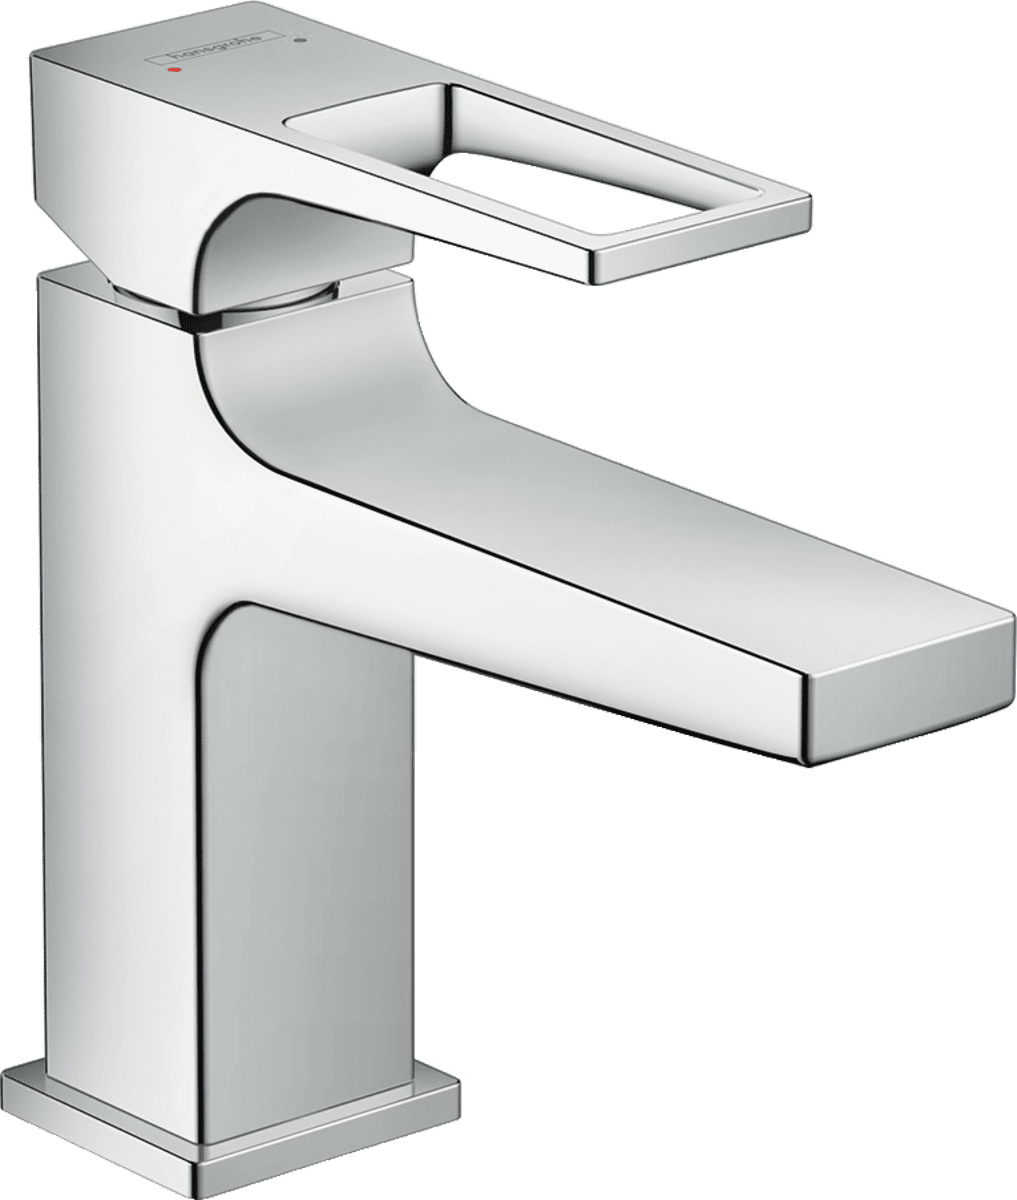 εικόνα του HANSGROHE Metropol Single lever basin mixer 100 with loop handle for handrinse basins with push-open waste set #74500000 - Chrome